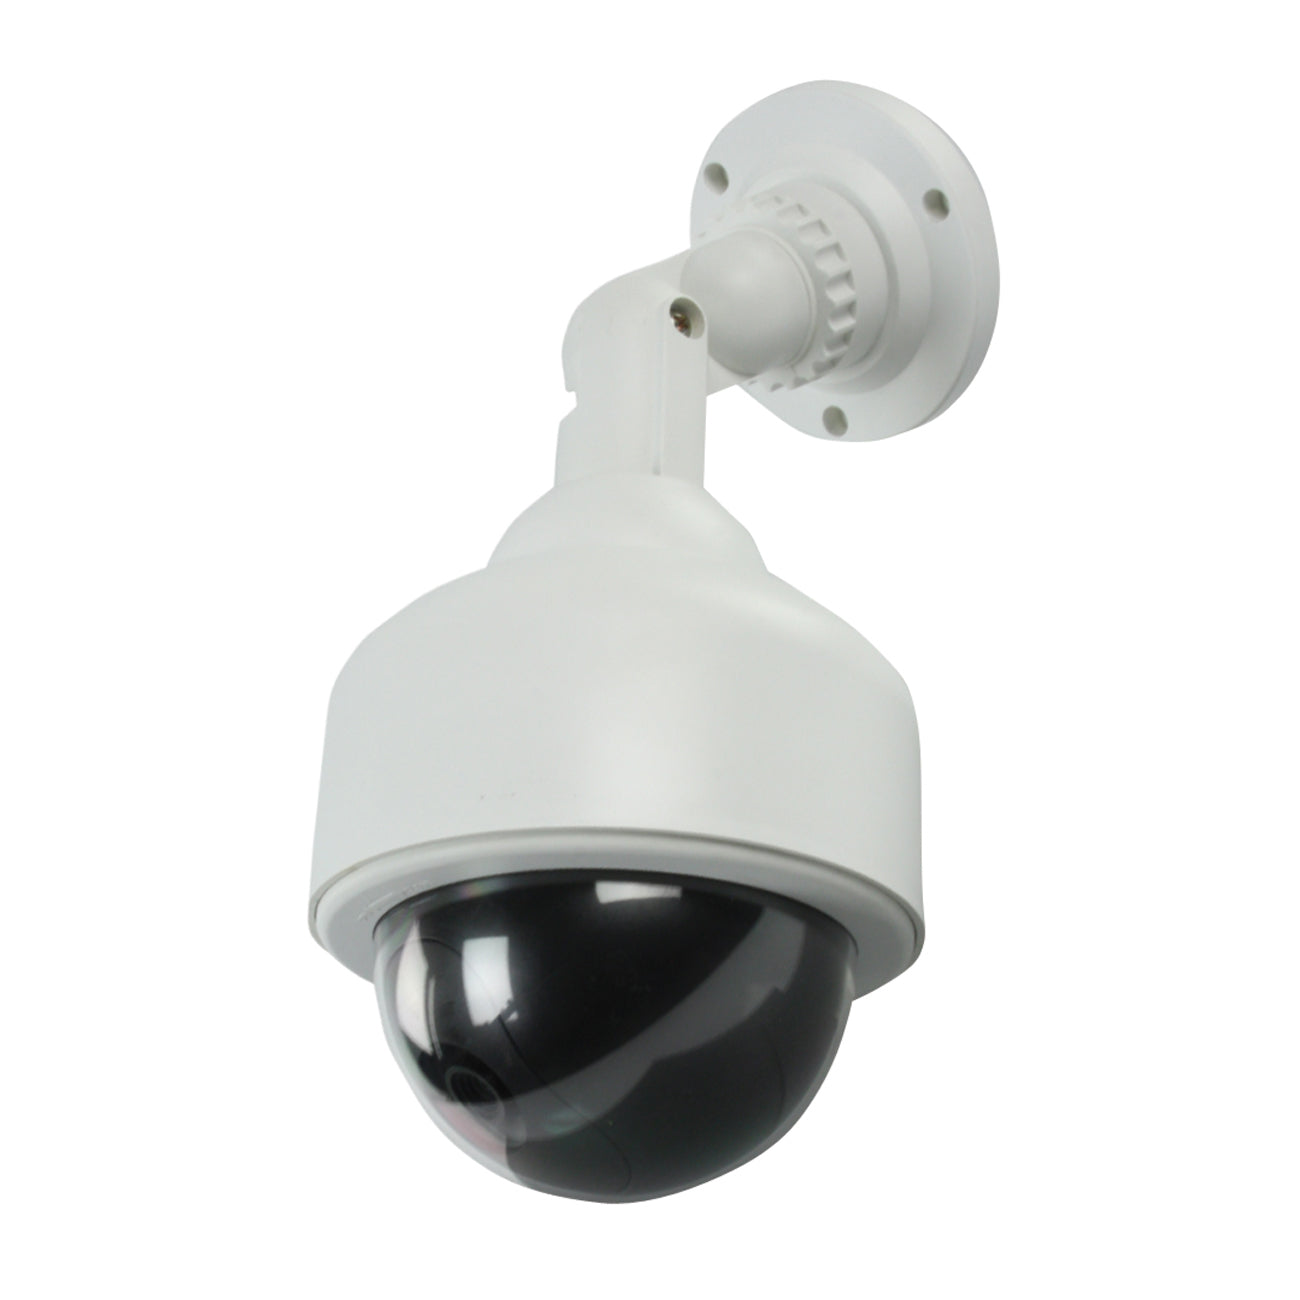 Überwachungskamera Attrappe IP65 Speed Dome mit LED Licht Mini Dome Kamera Dummy